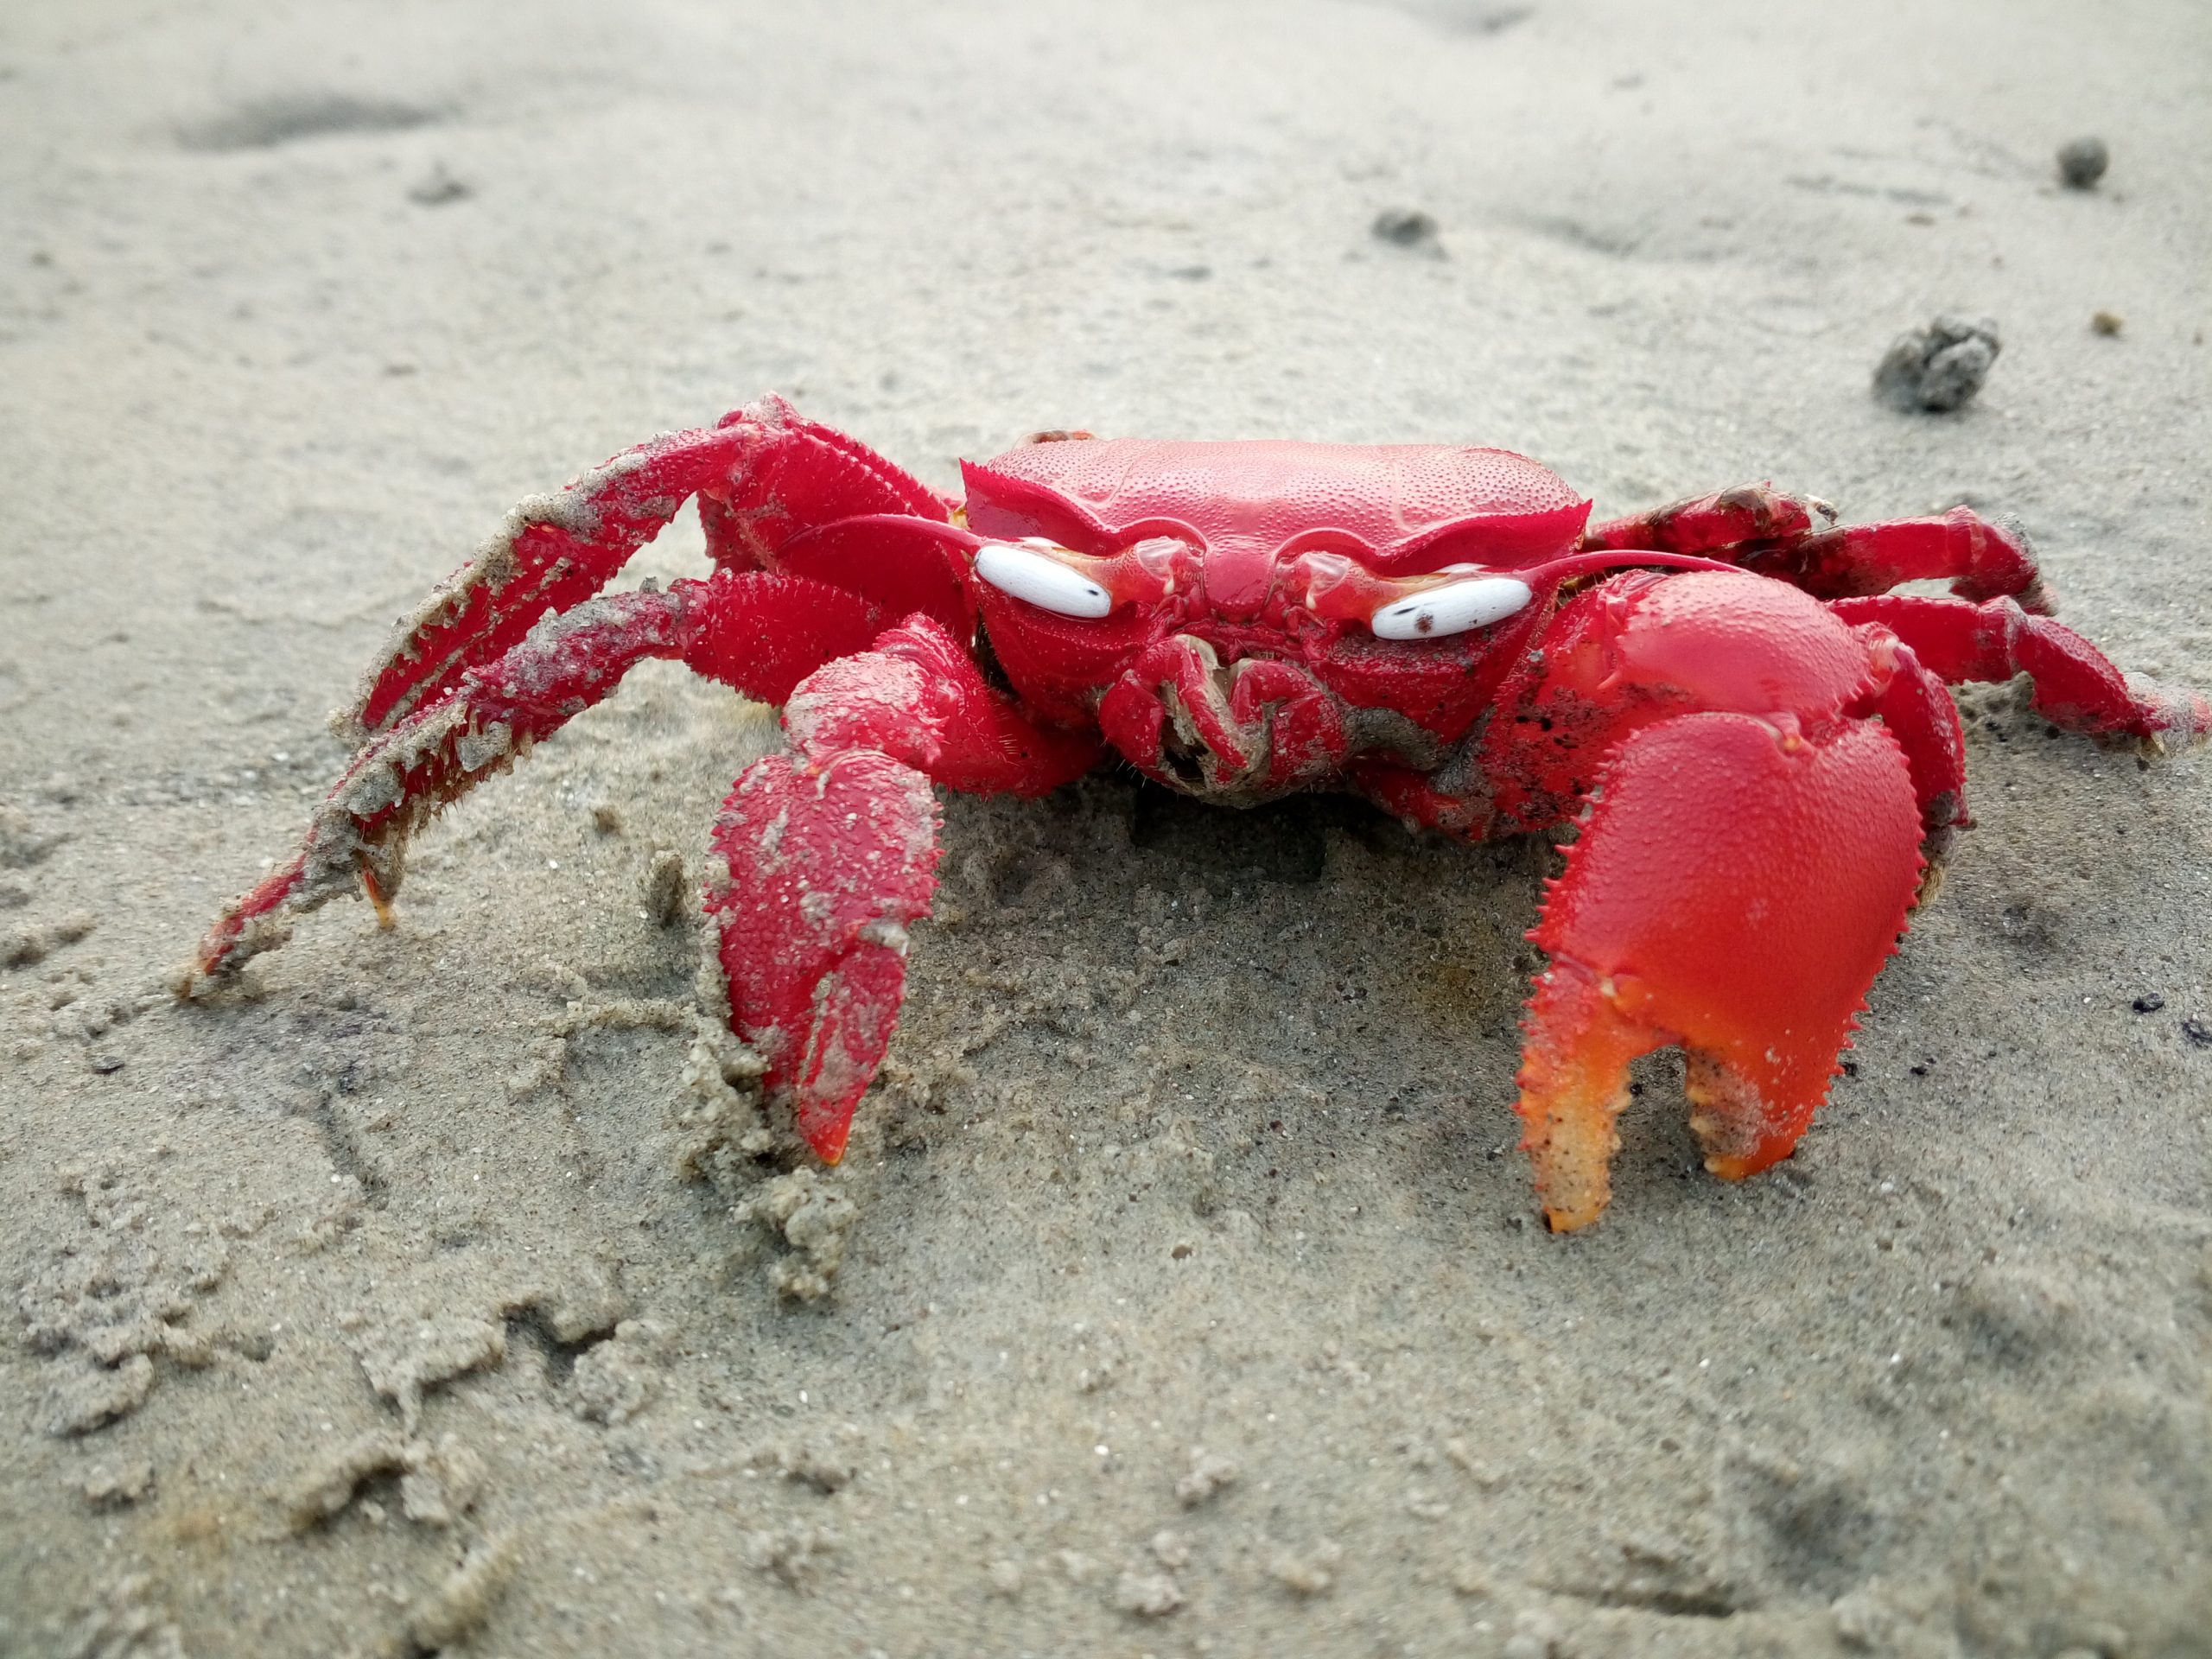 Crab near a sea beach